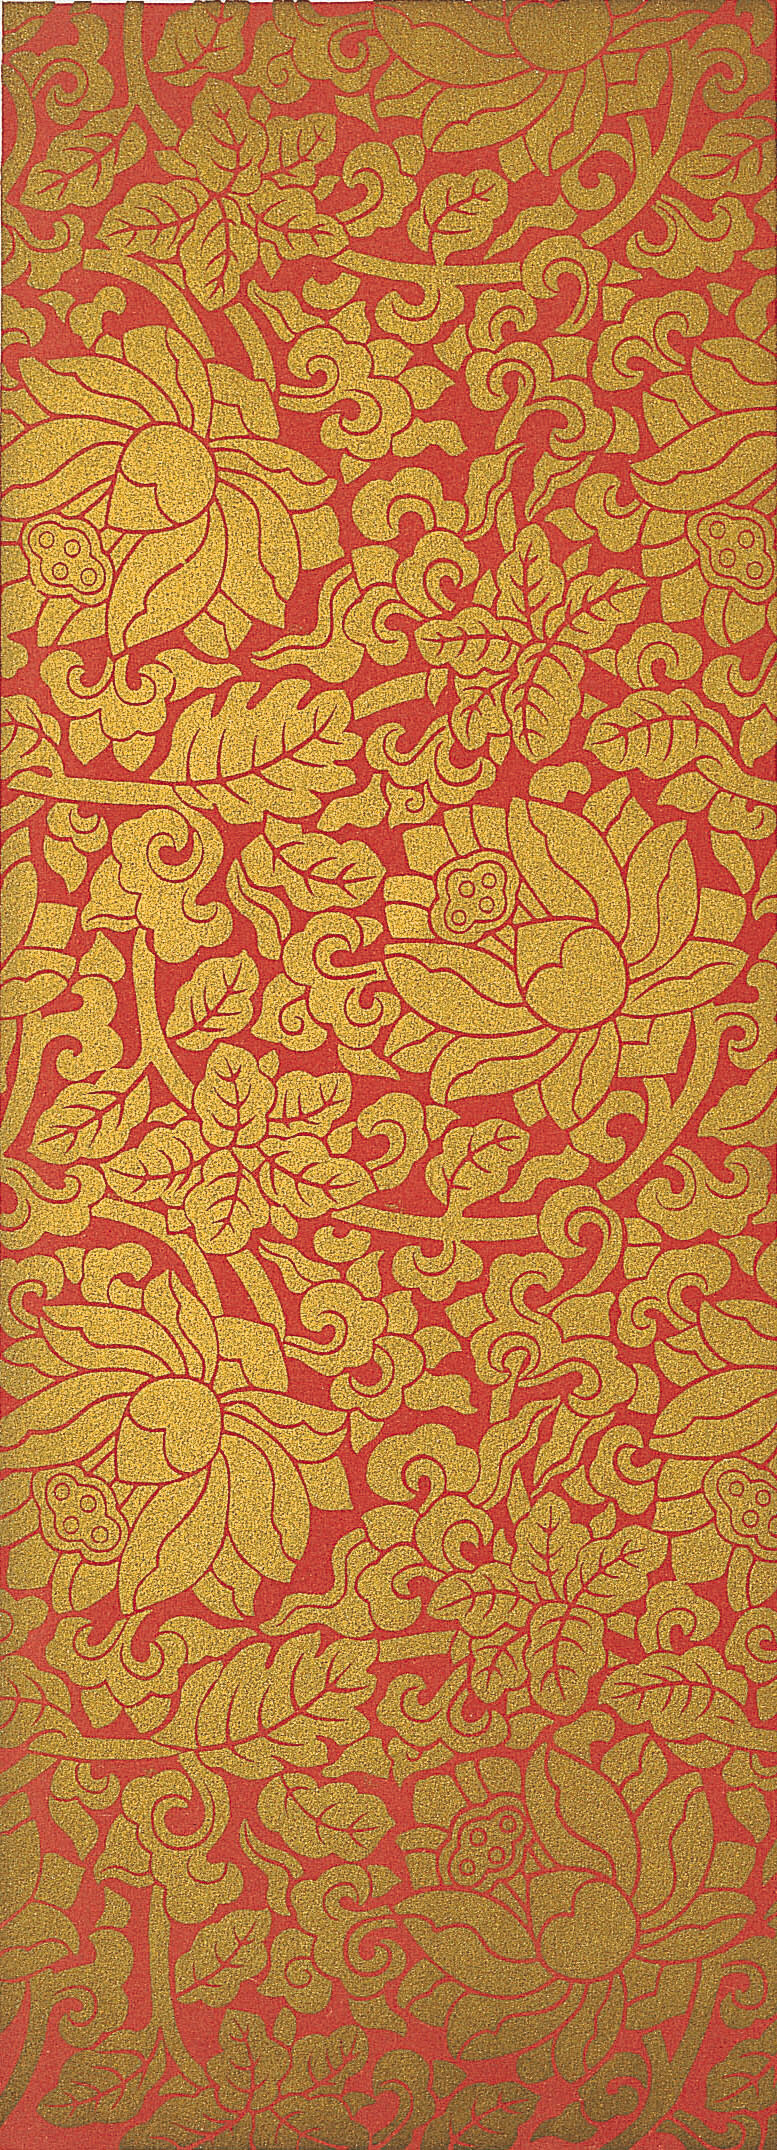 中國圖騰 中國 圖騰 花纹 金色 地毯 背景底纹 底纹边框